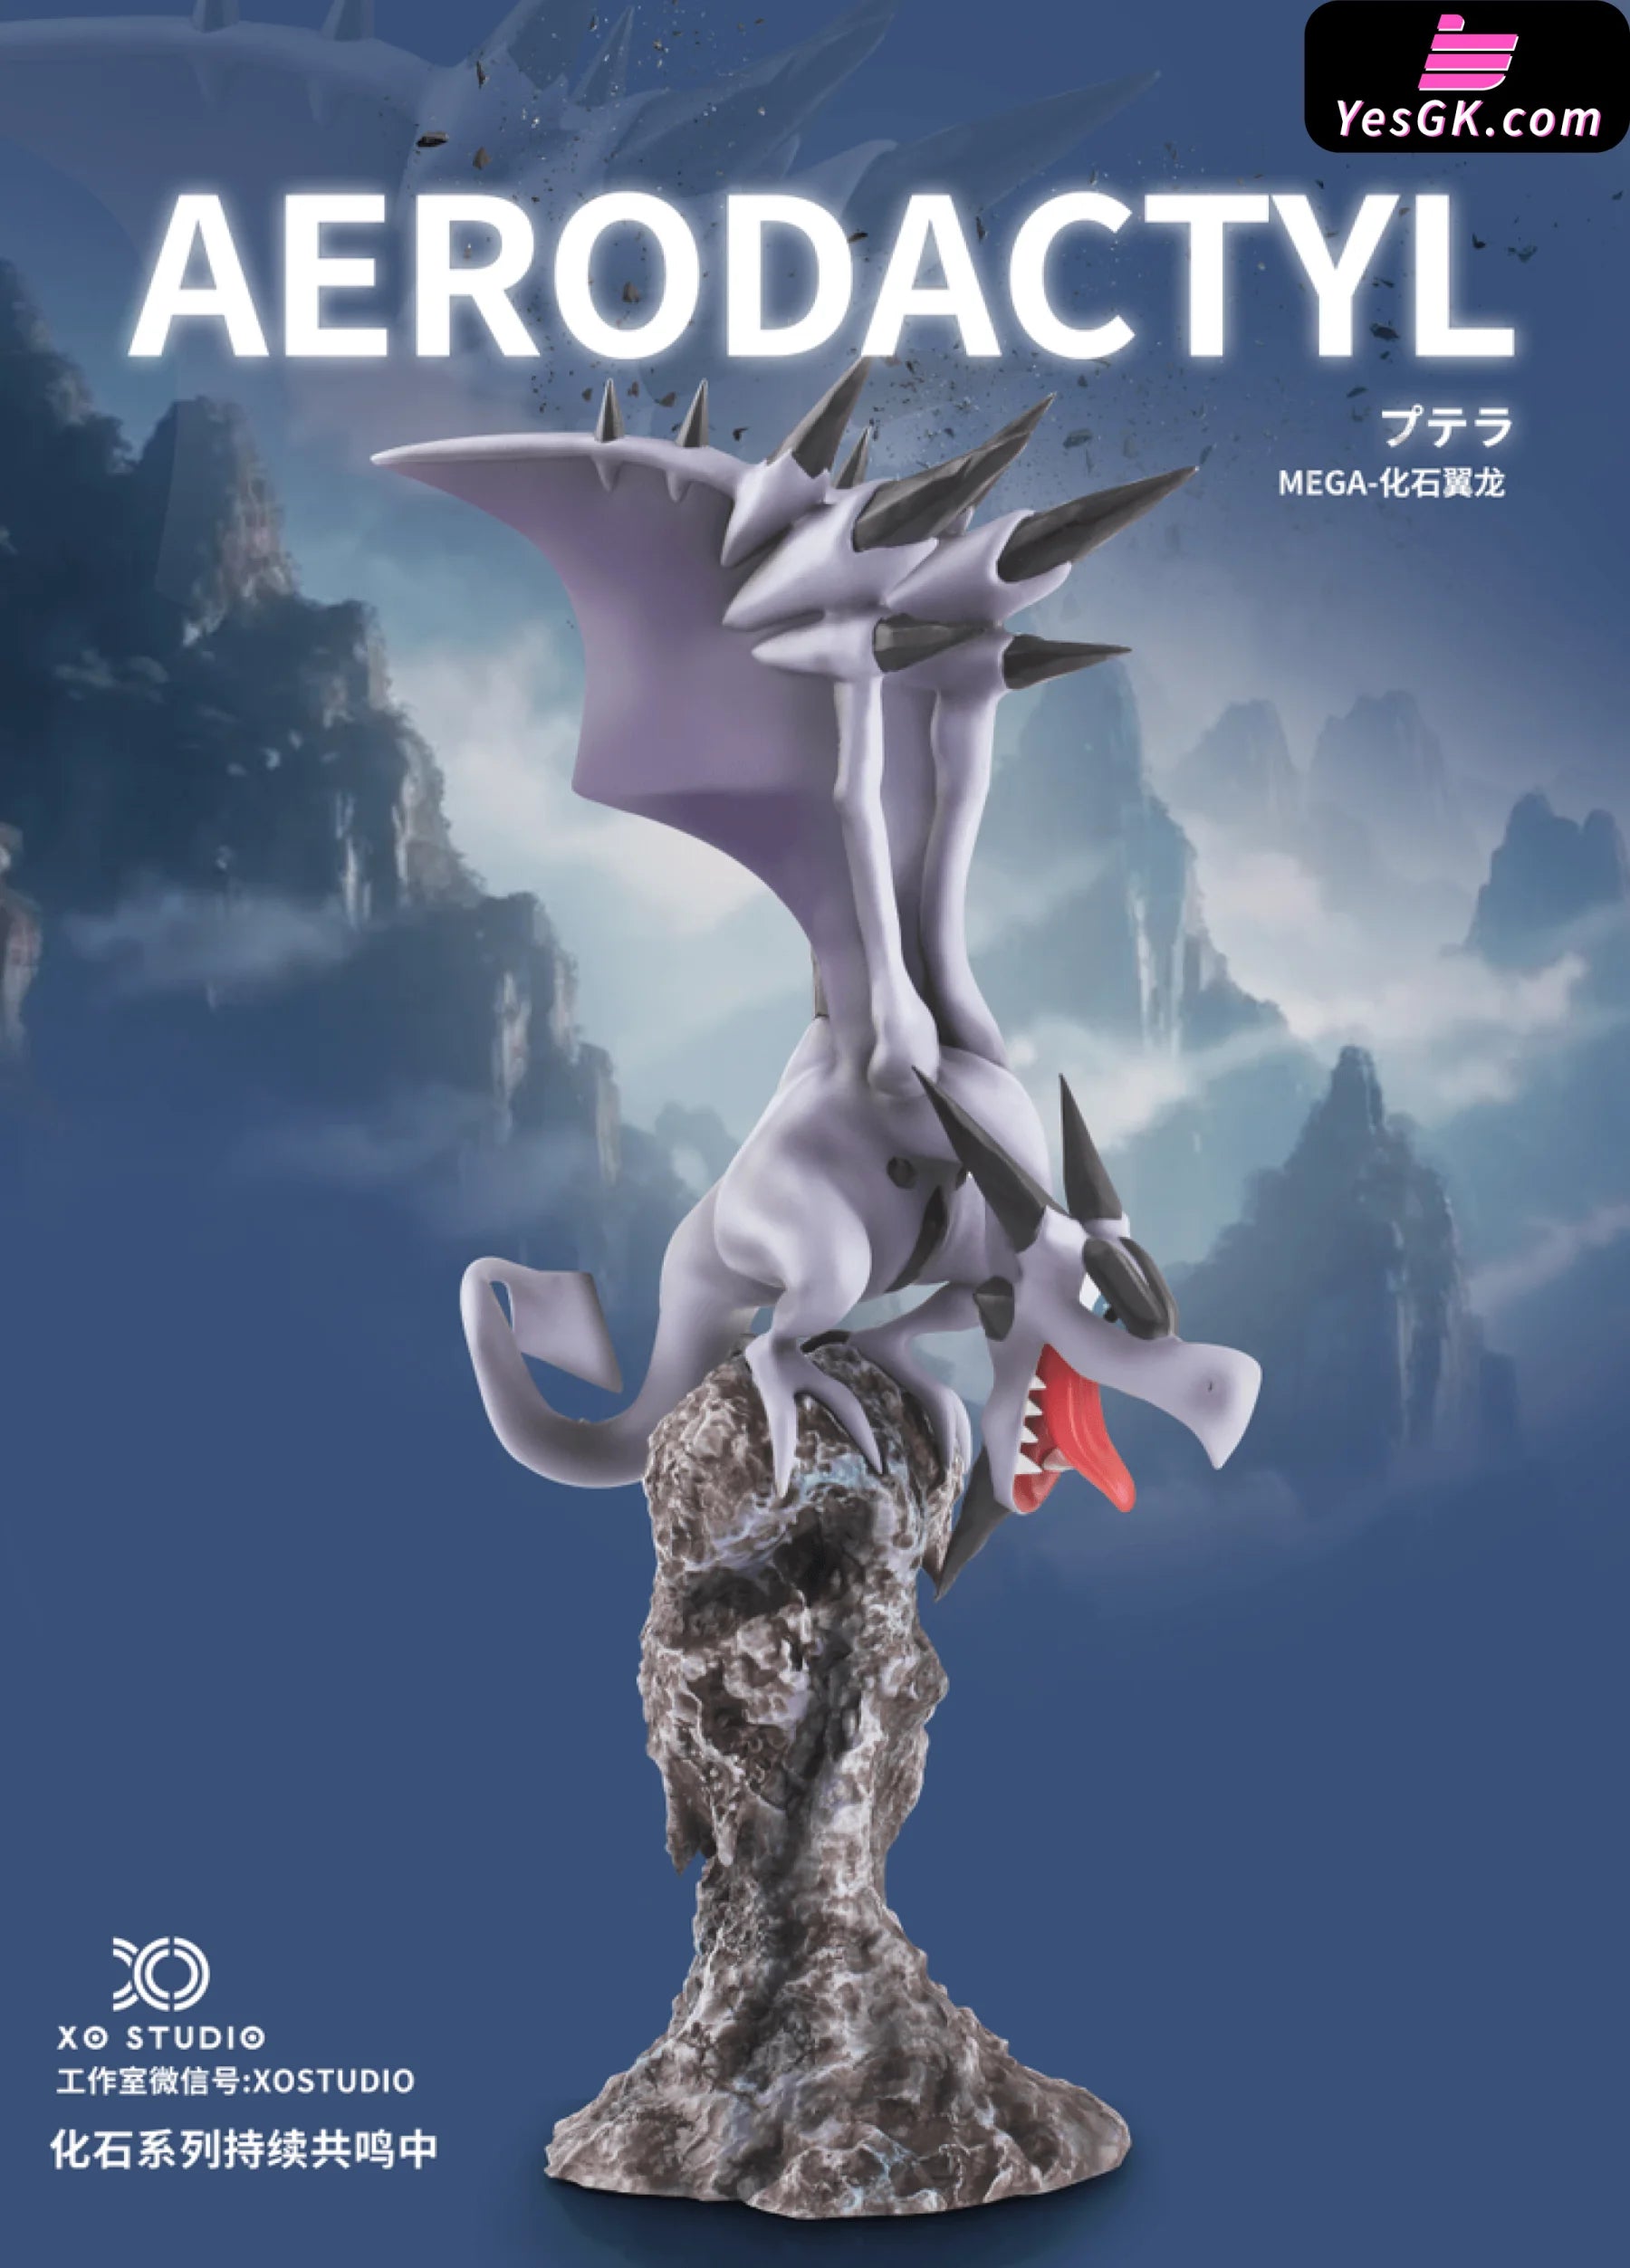 Pokémon GO: Mega Aerodactyl Raid Guide | The Nerd Stash